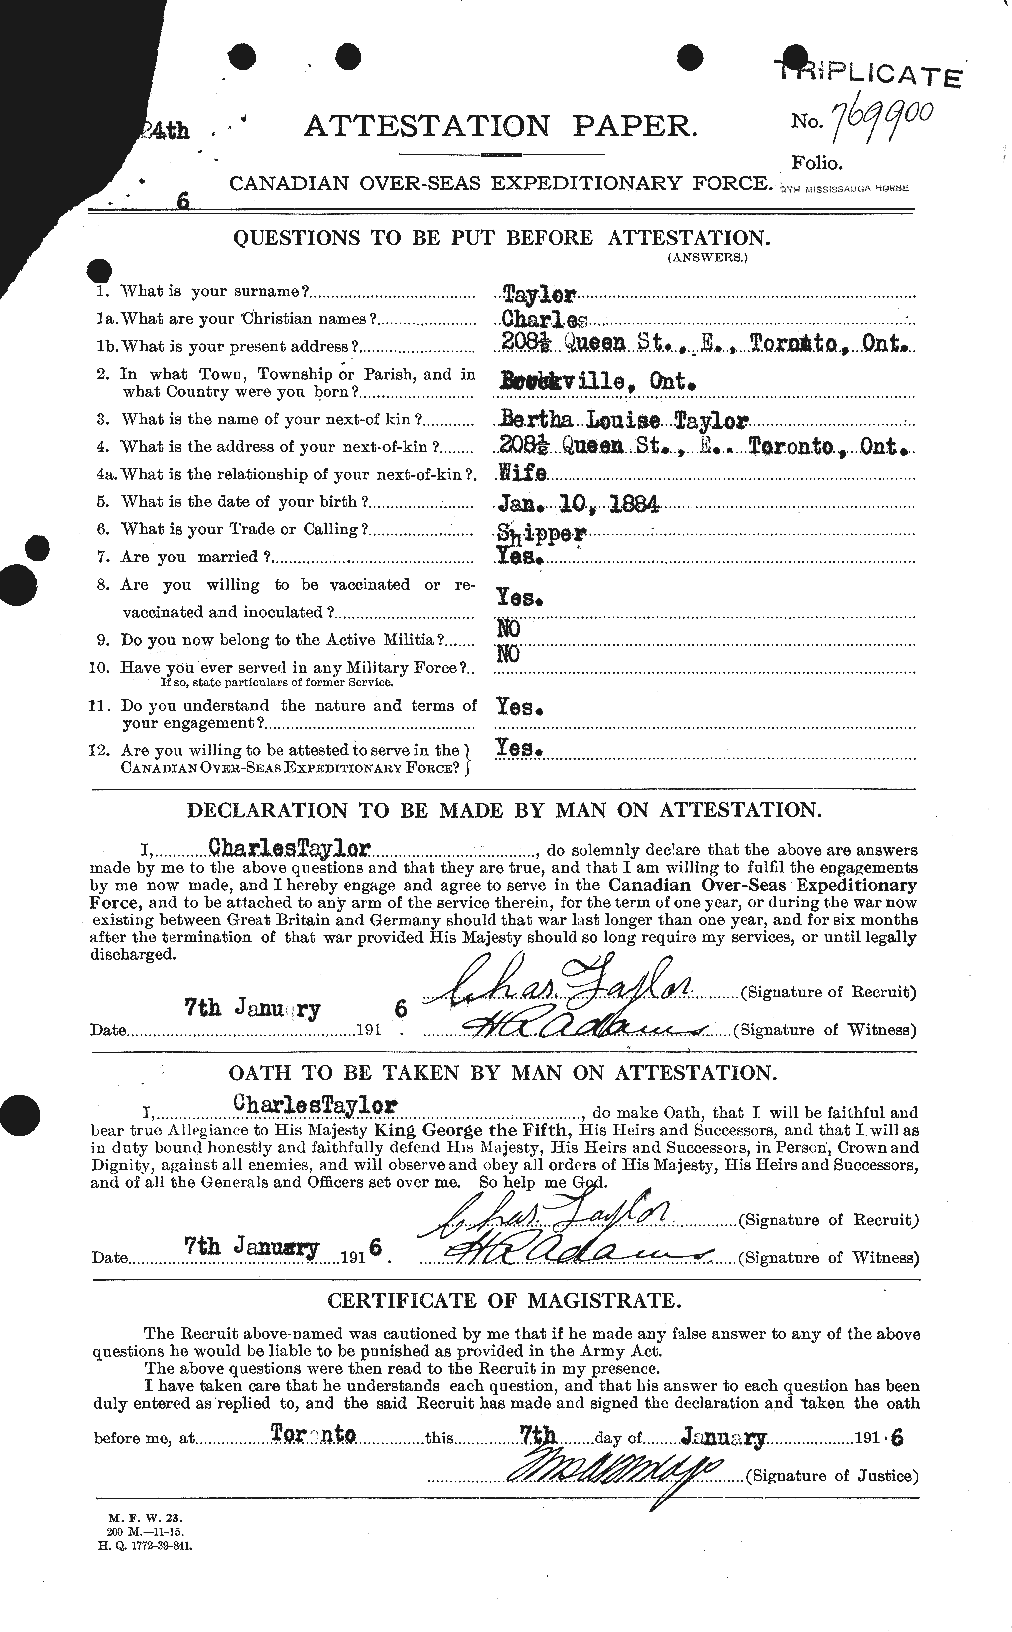 Dossiers du Personnel de la Première Guerre mondiale - CEC 626820a